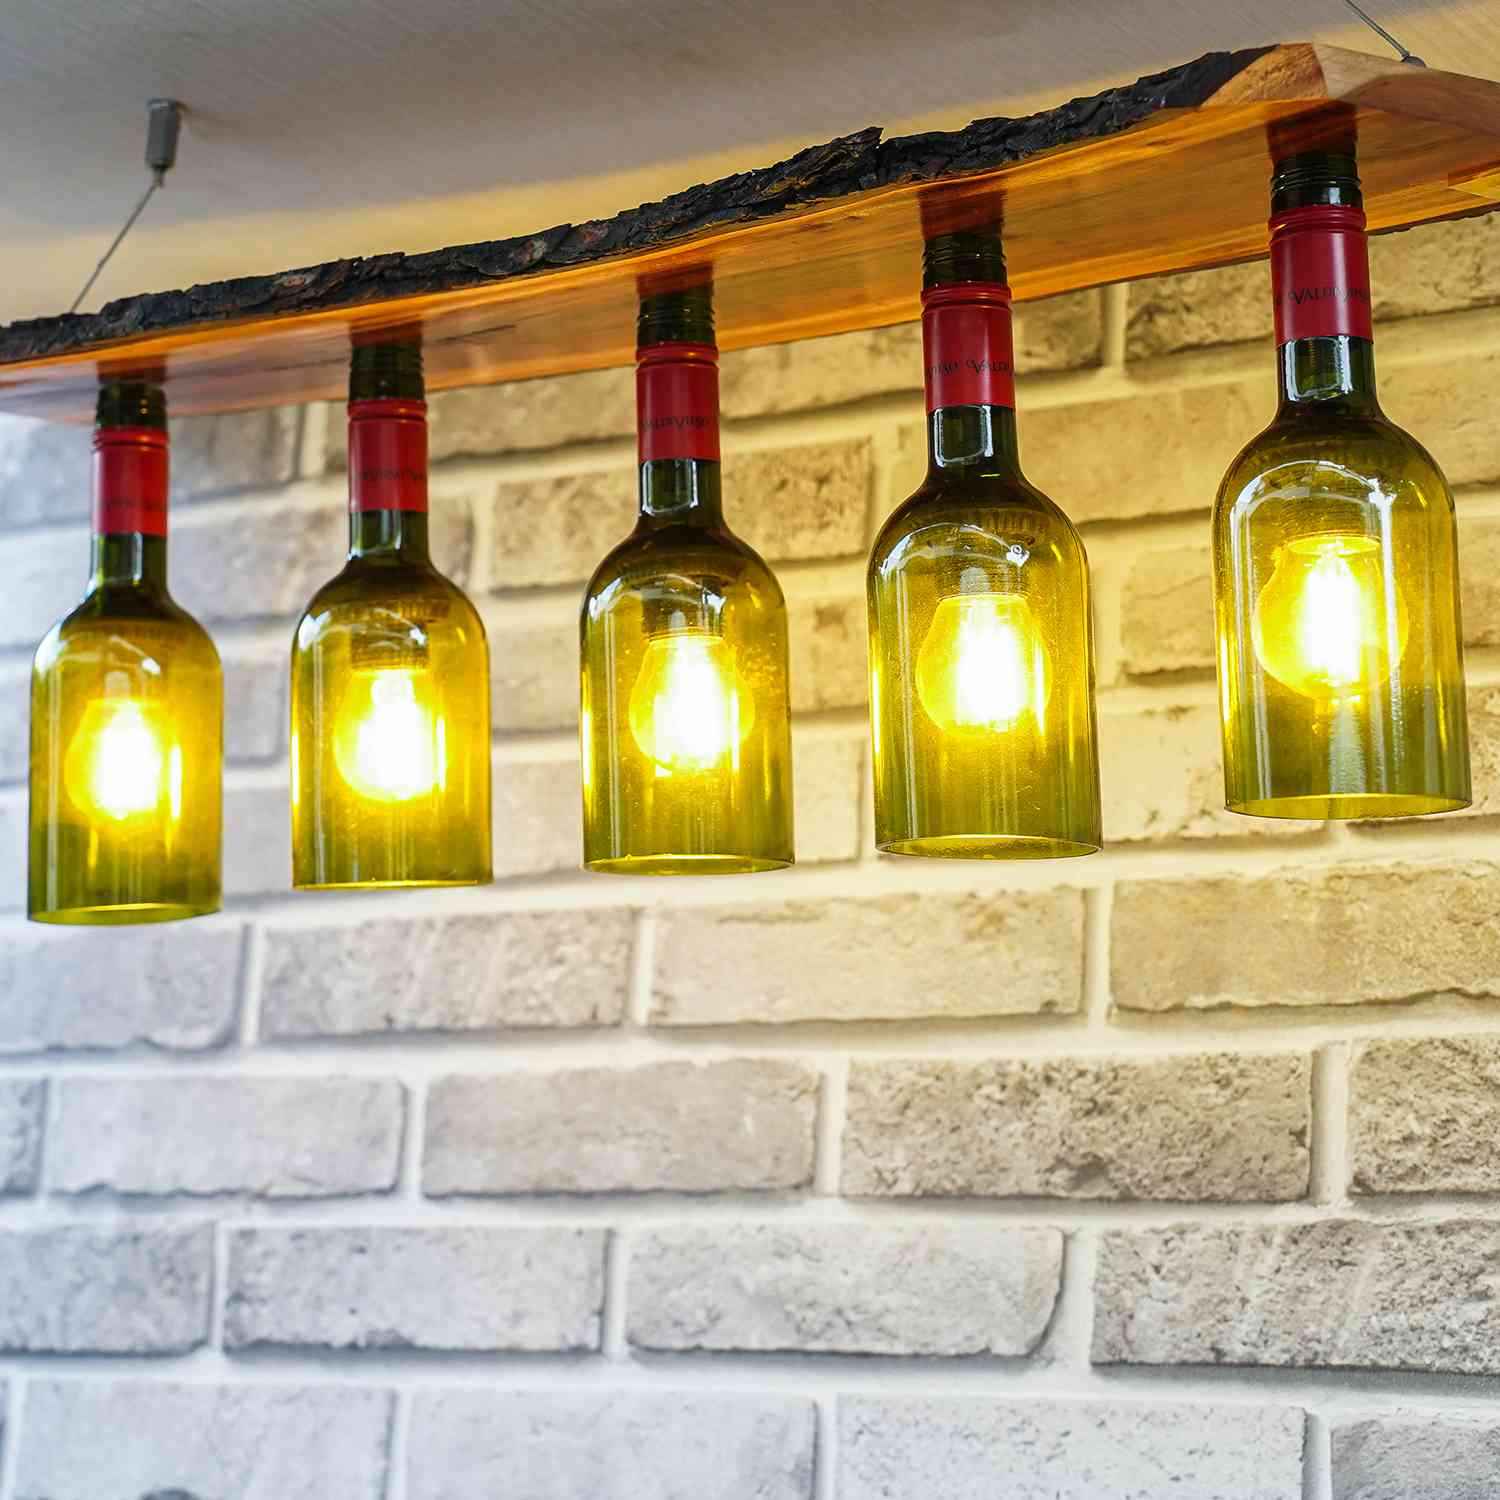 Multi Bulb Ceiling Lamp (Recycled Bottles) - 6 Bottles